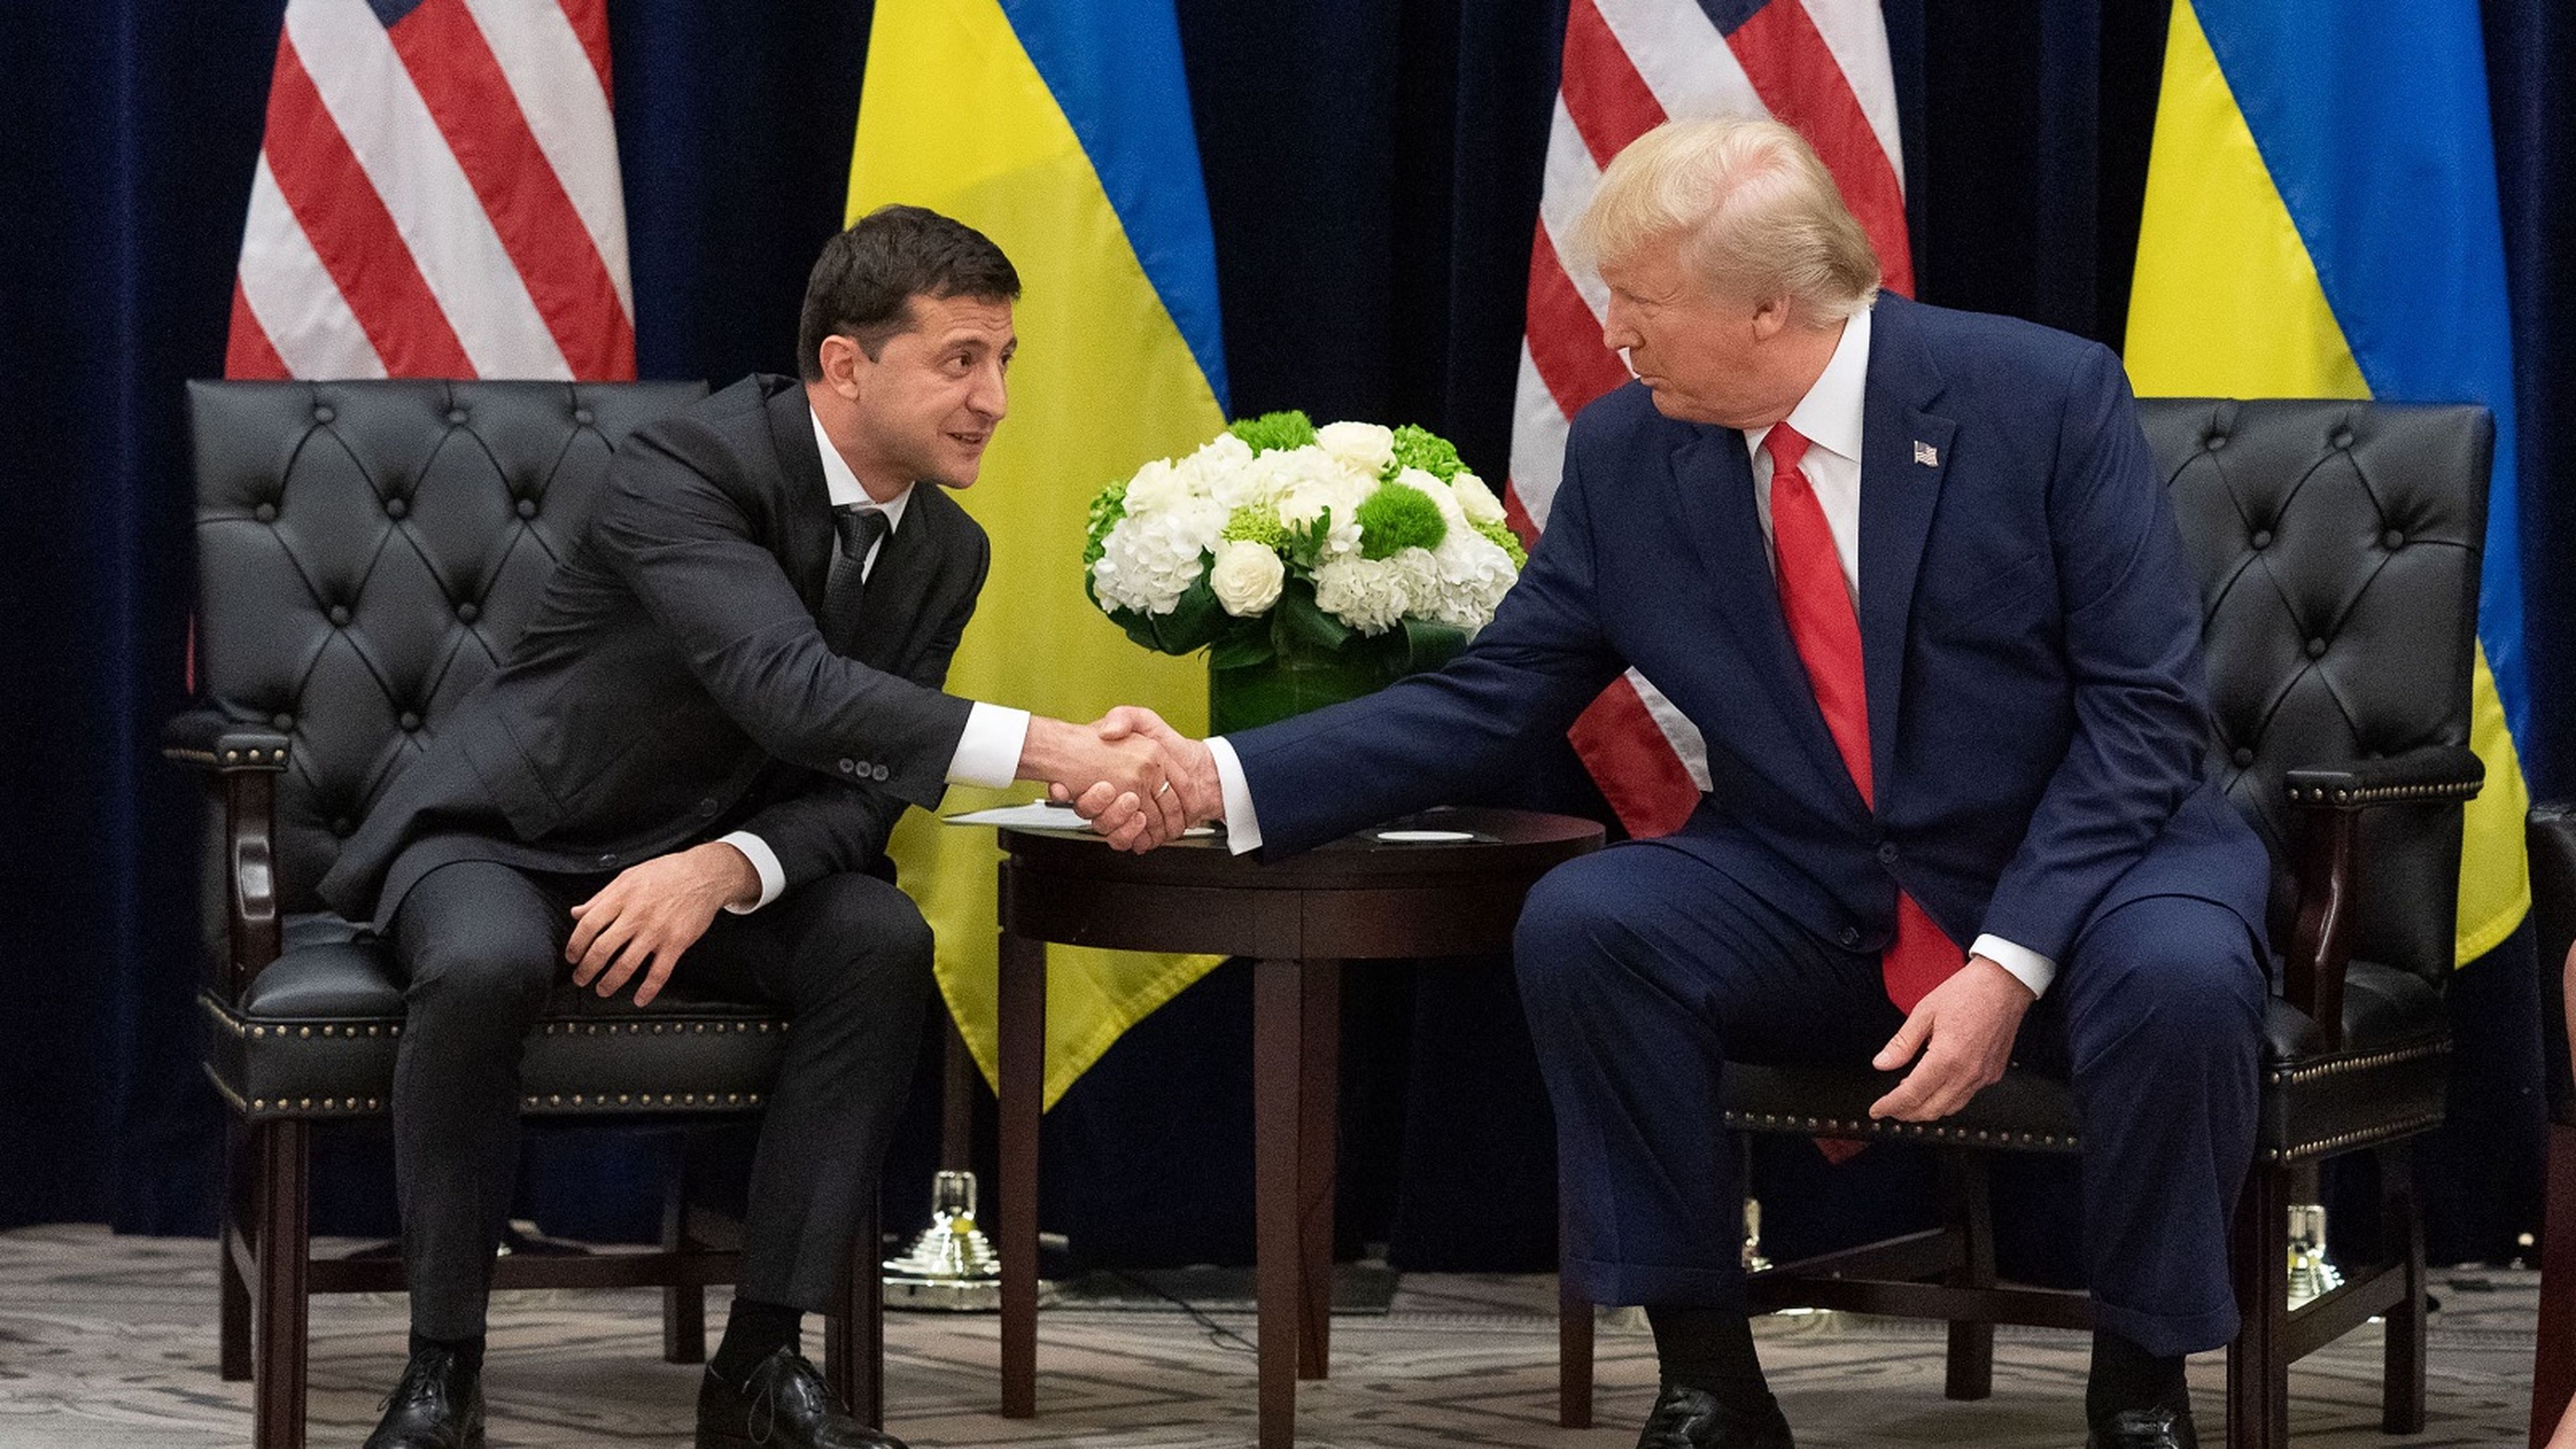 El presidente de Ucrania, Volodímir Zelenski, estrecha la mano de su homólogo estadounidense, Donald Trump.